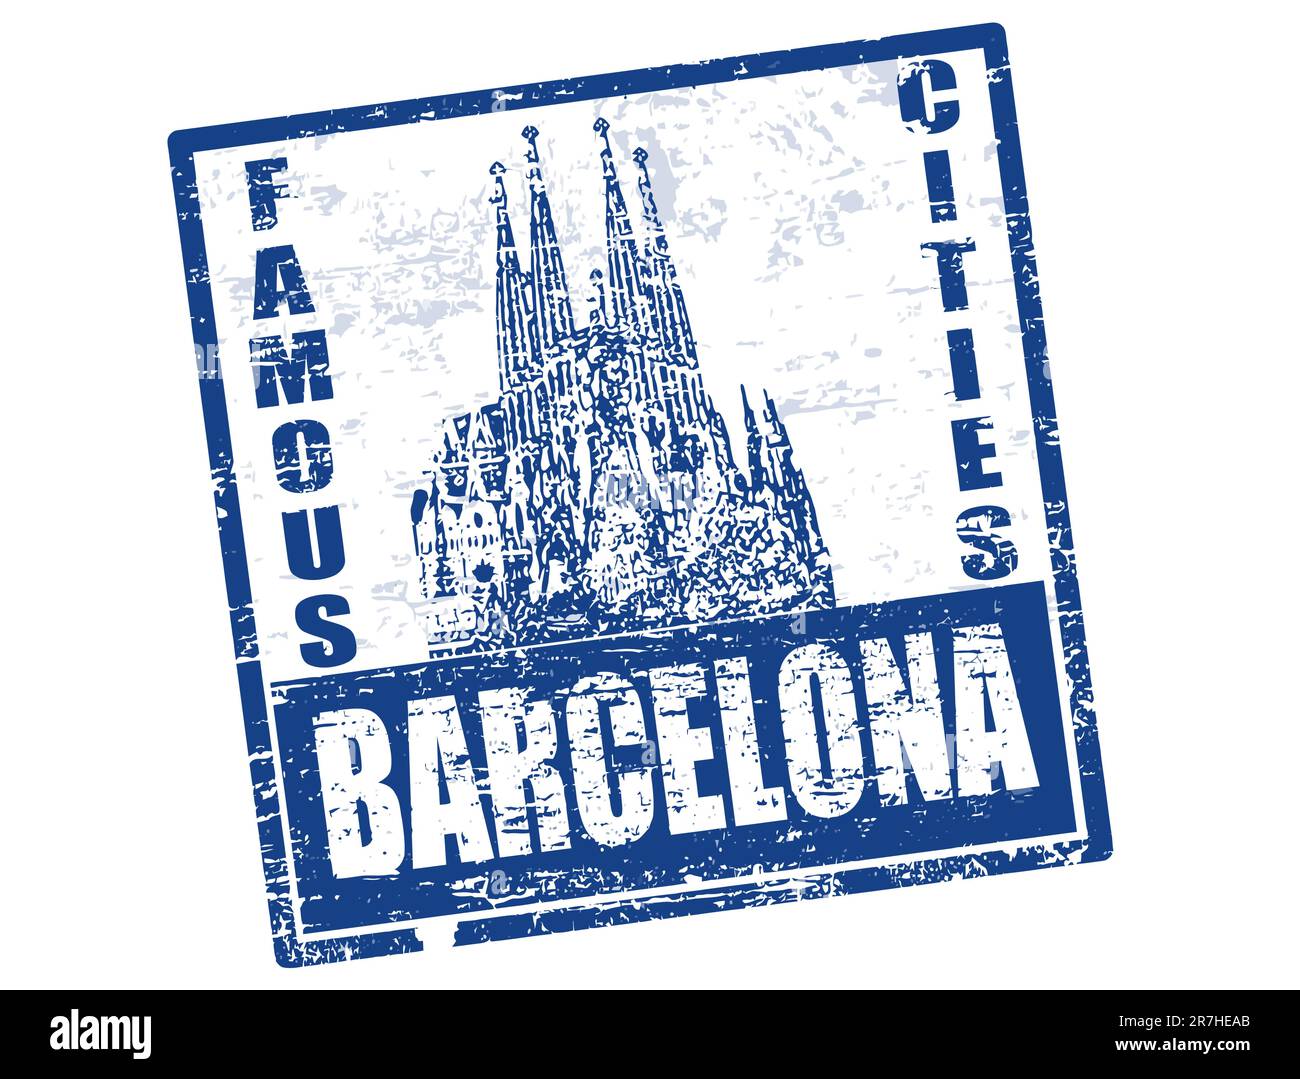 Timbre en caoutchouc bleu avec la forme du grand canal et le mot Barcelona écrit à l'intérieur Illustration de Vecteur